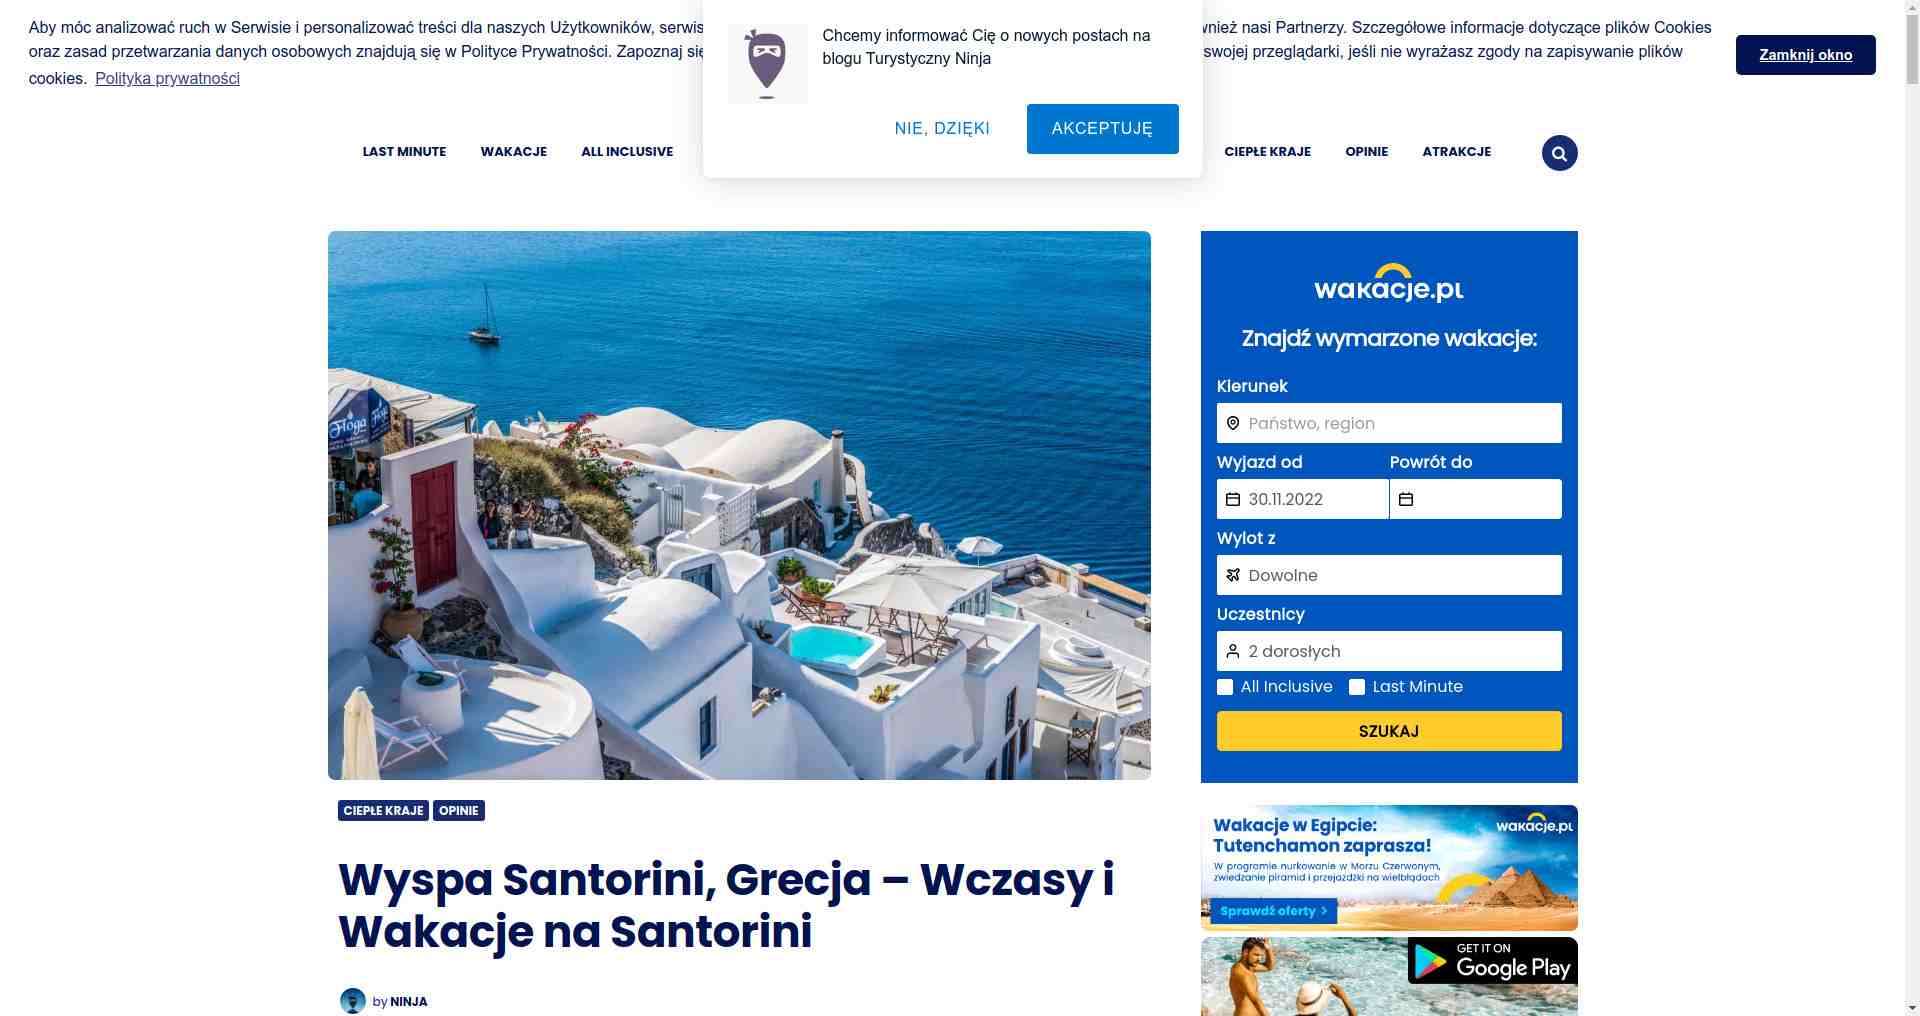 Santorini wczasy 2022